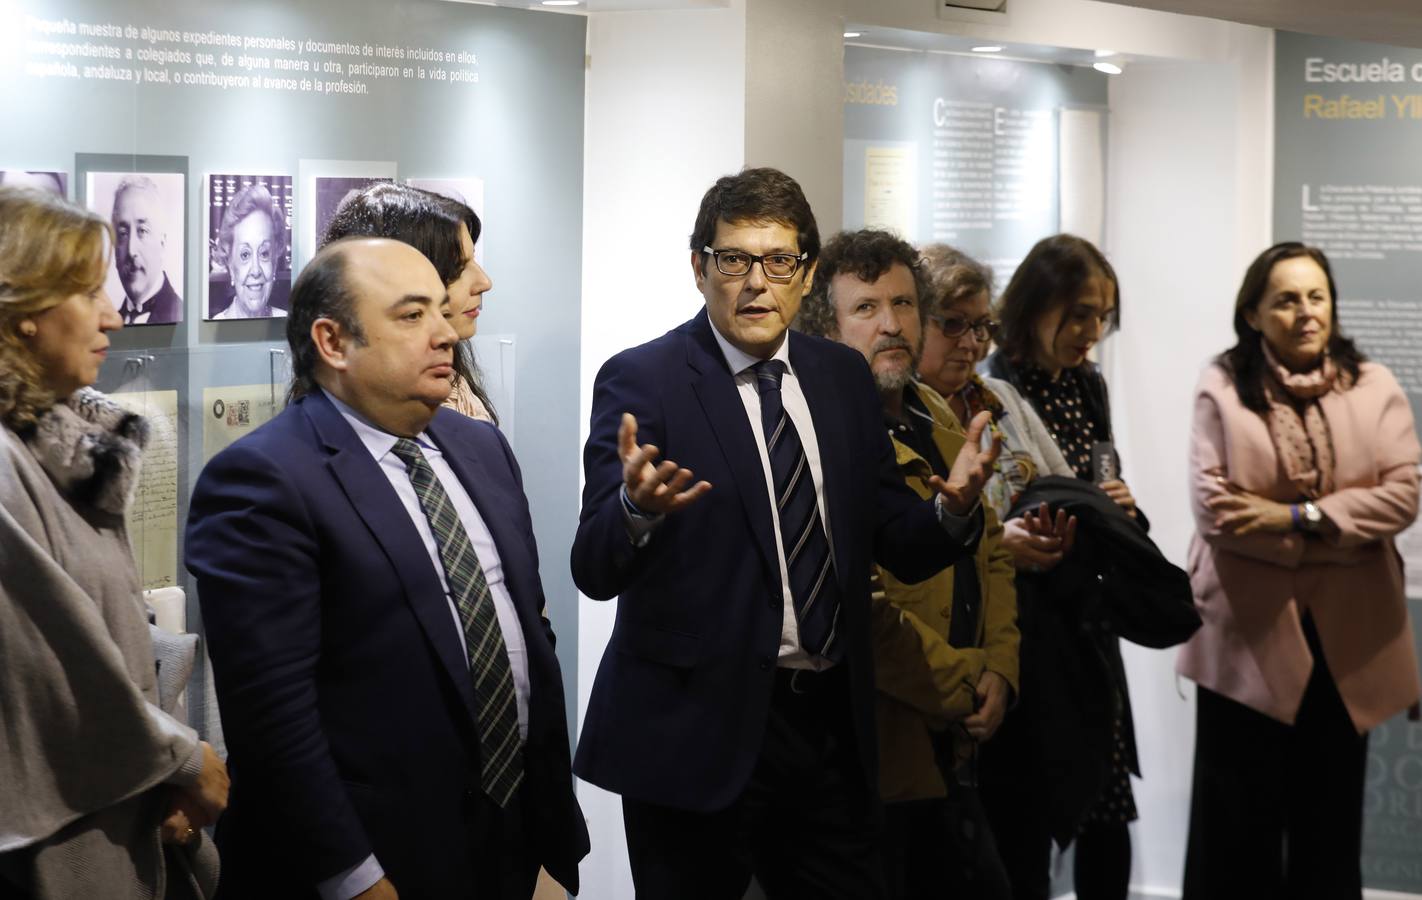 La exposición de los fondos del Colegio de Abogados de Córdoba, en imágenes